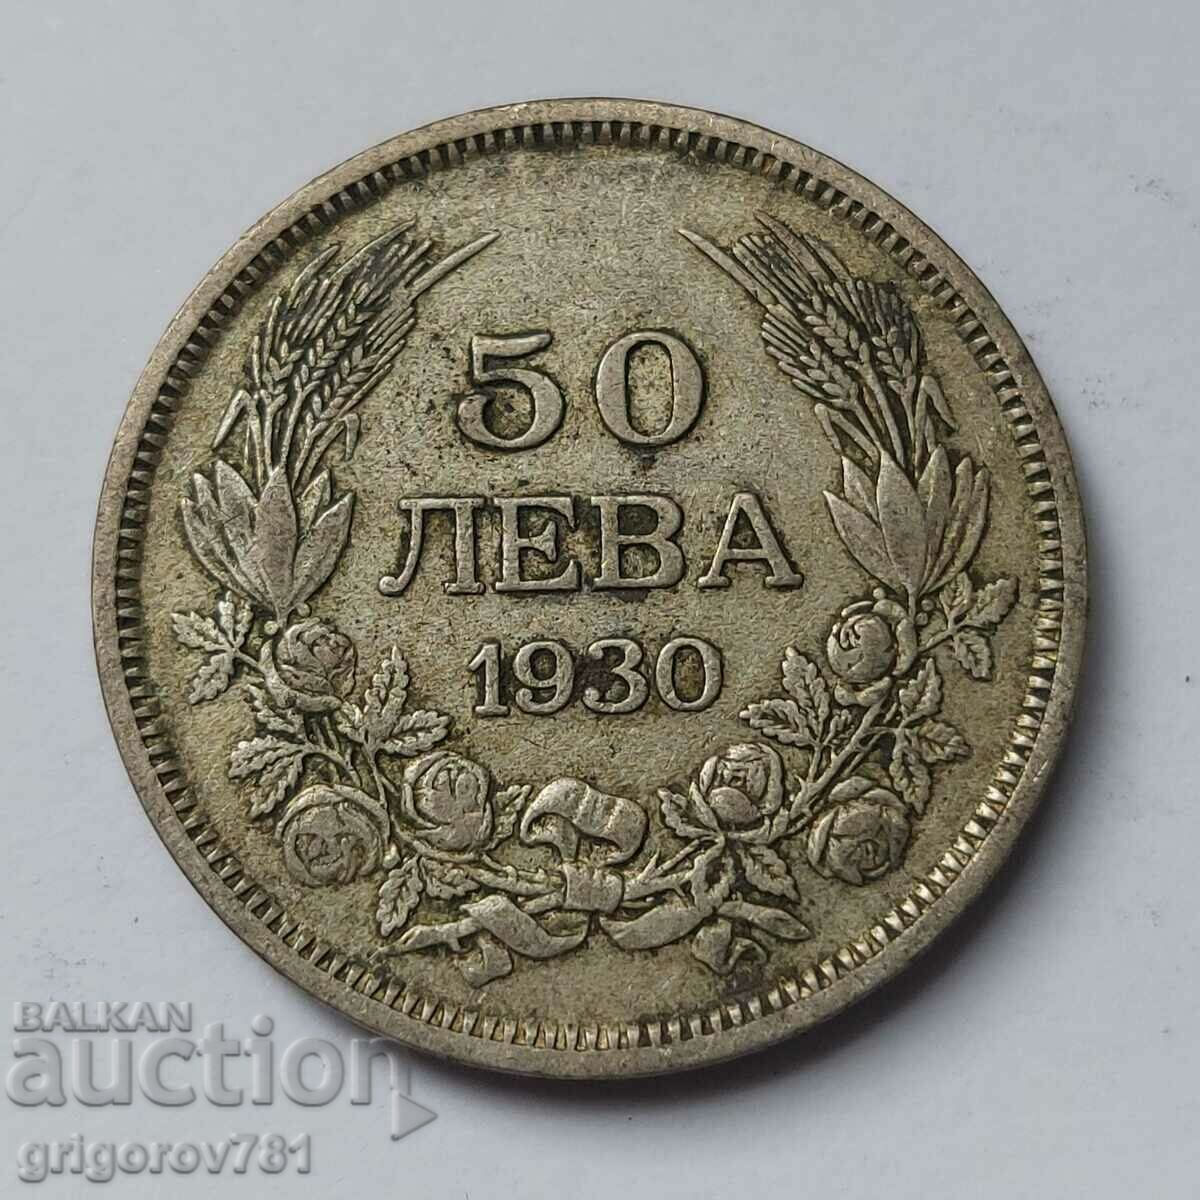 50 leva silver Bulgaria 1930 - silver coin #56